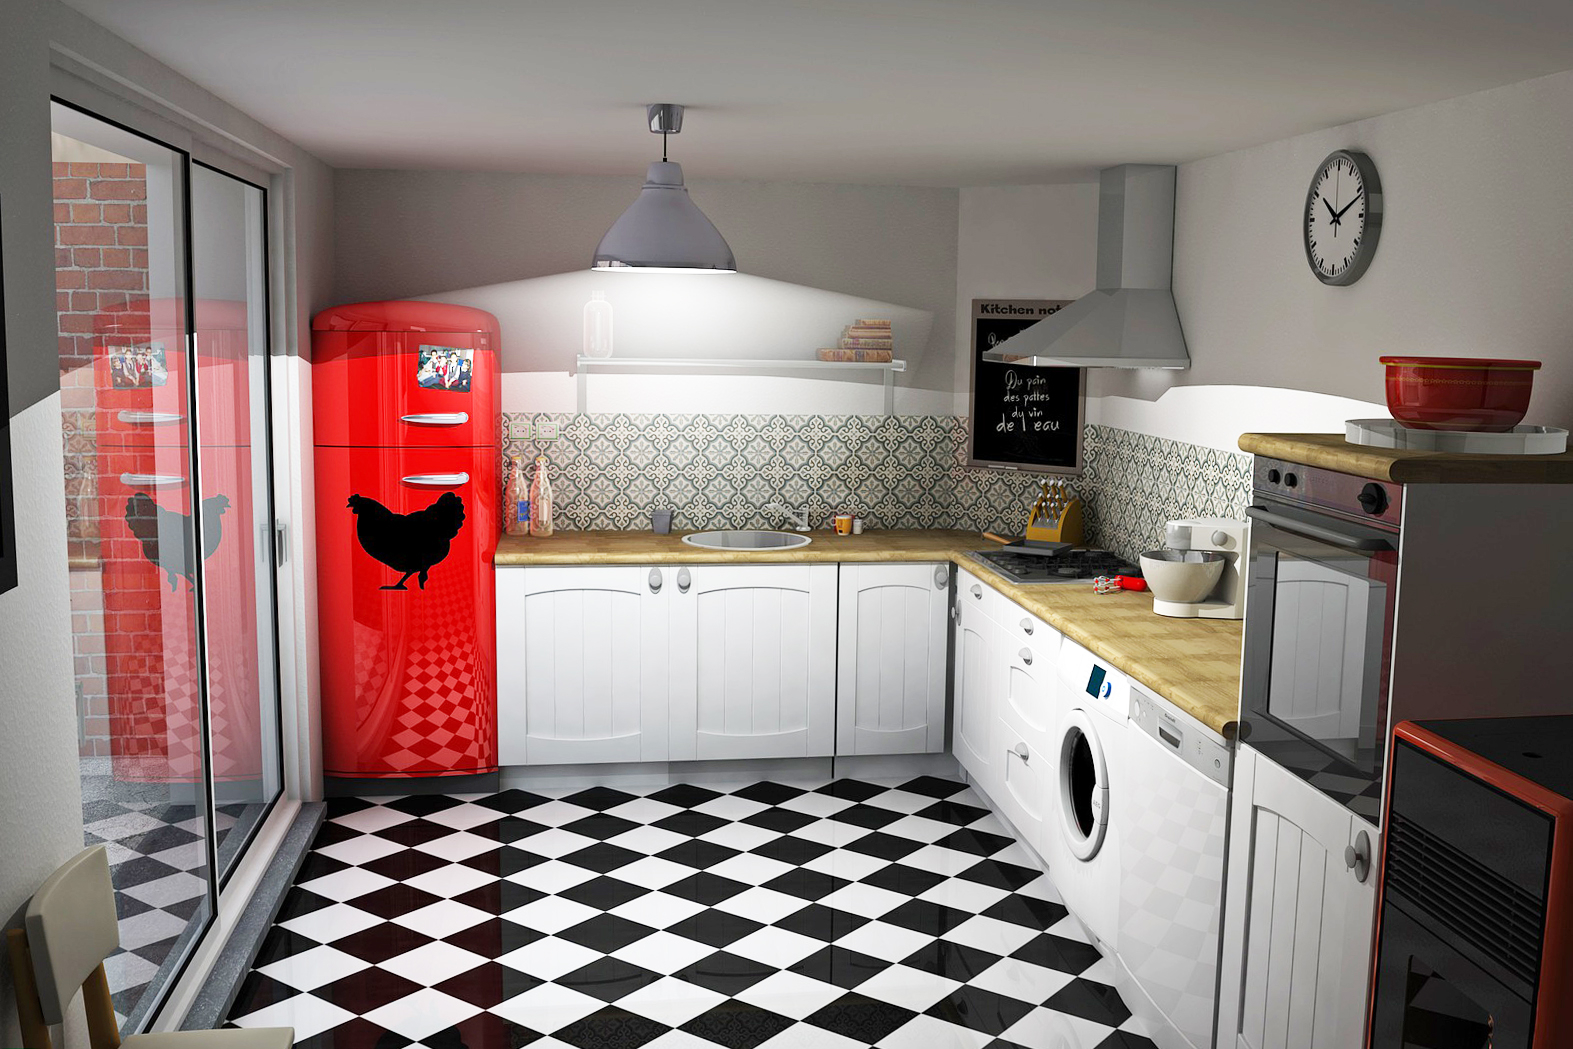 Как обновить и украсить старый холодильник (реставрация холодильника)